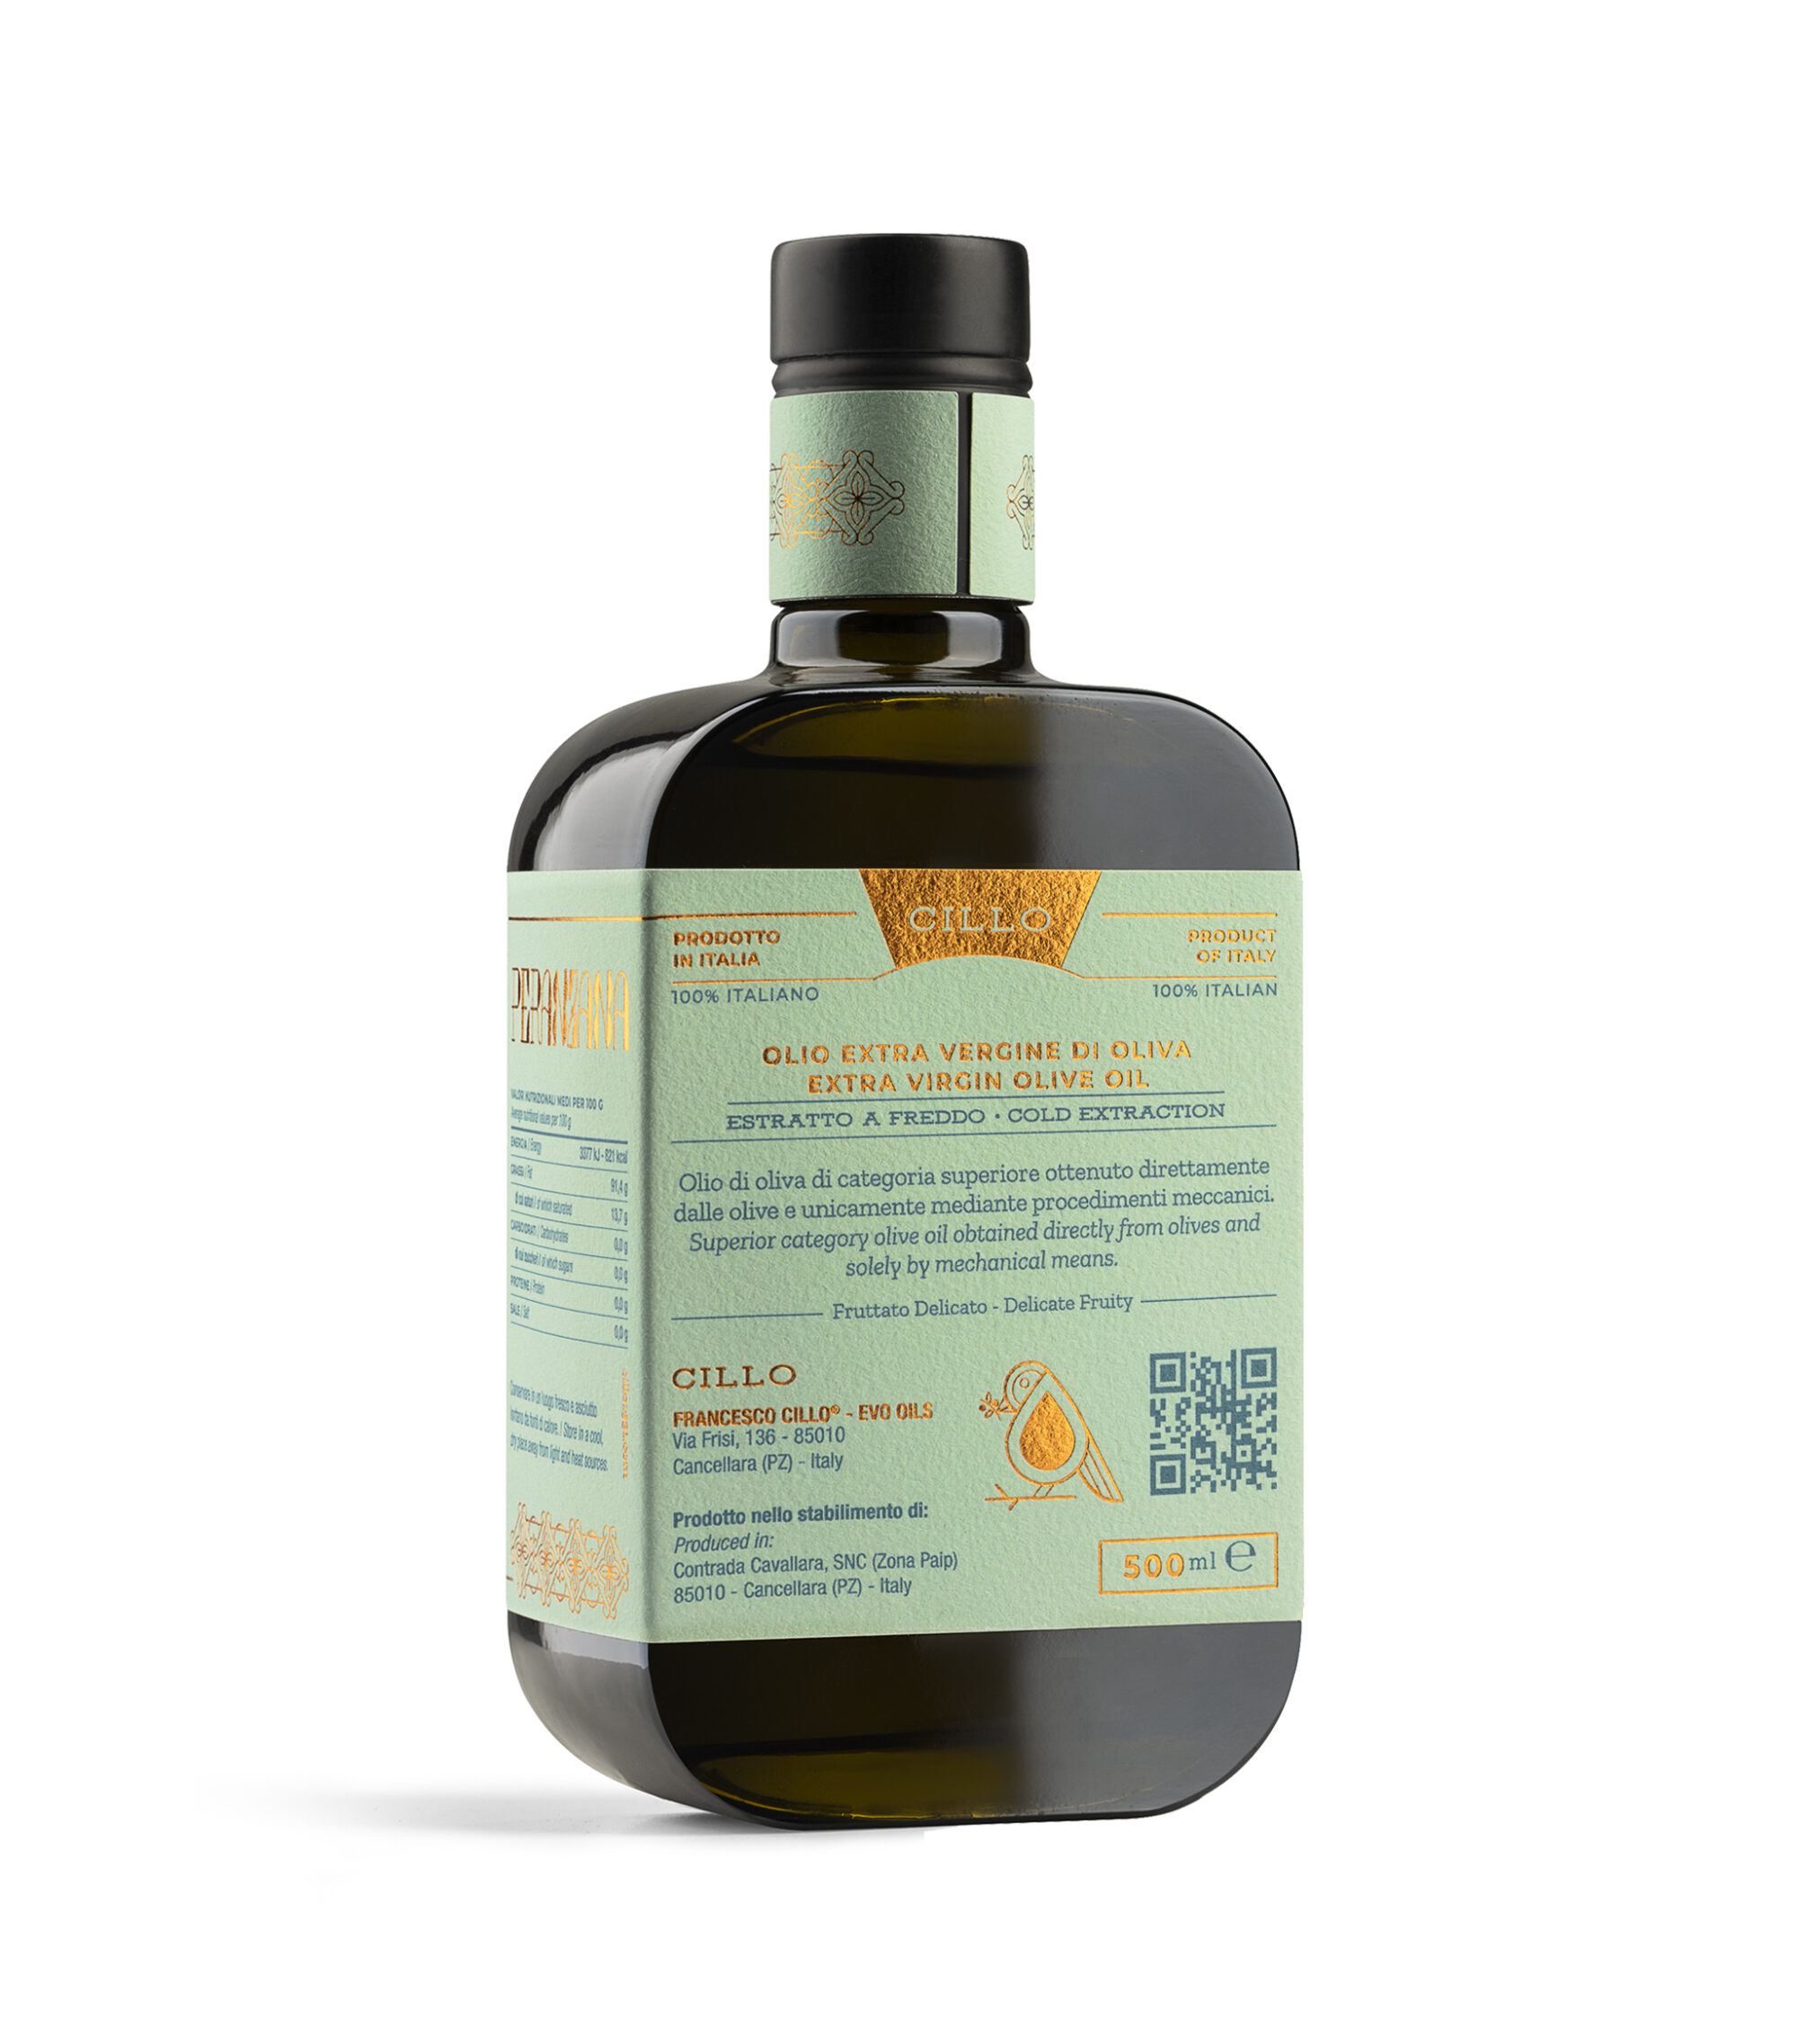 Olio extravergine di oliva Monocultivar Peranzana 500ml, Francesco Cillo EVO Oils.